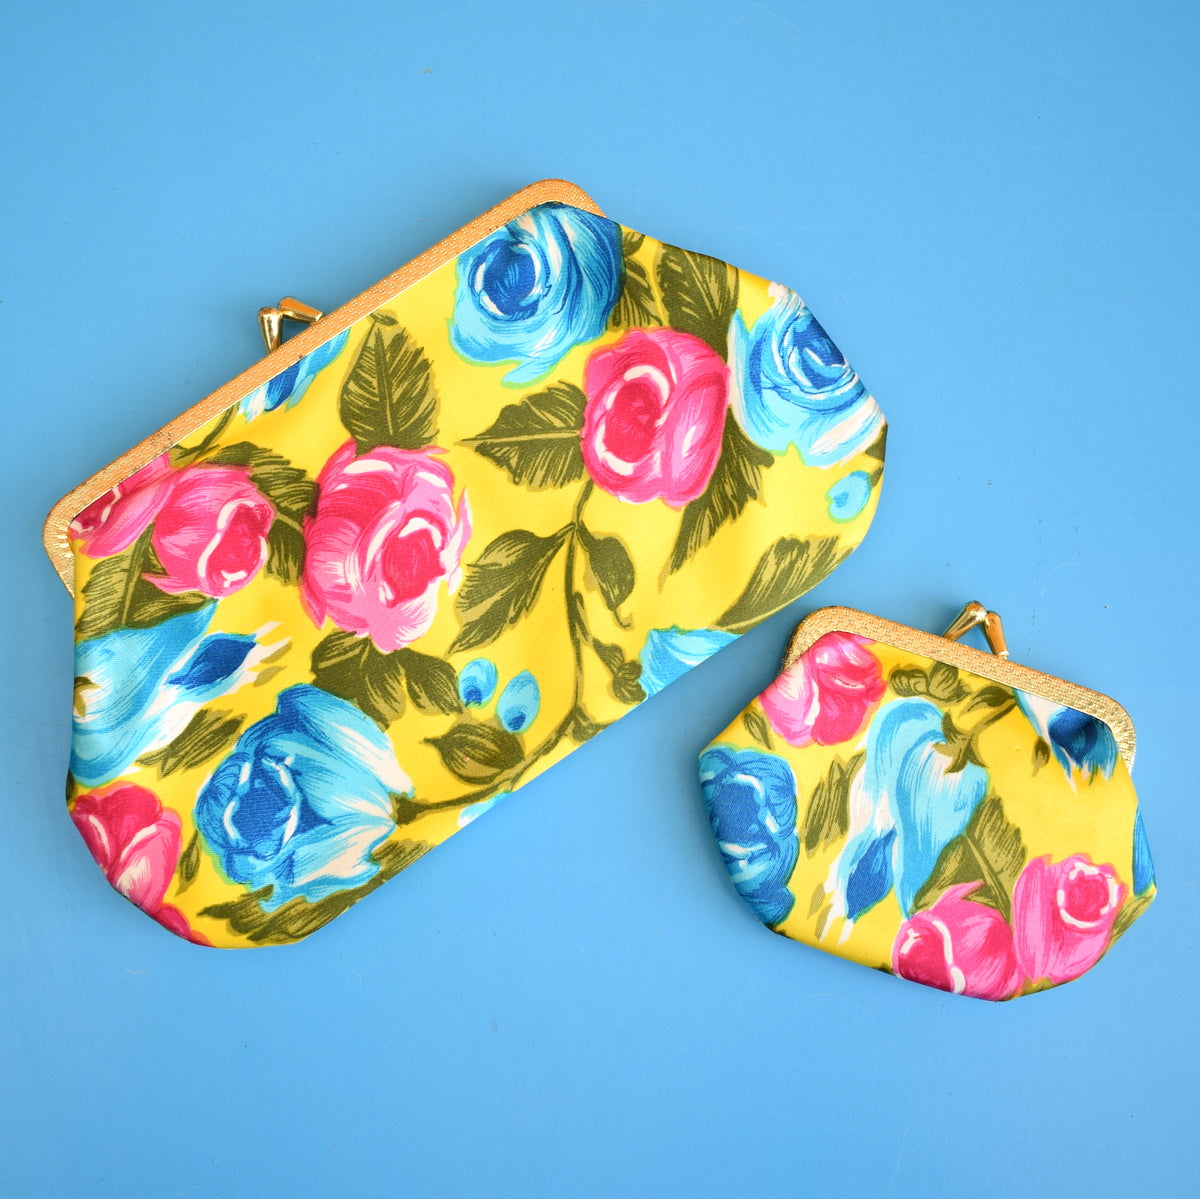 Vintage 1960s Floral Clutch Bag / Purse - Yellow